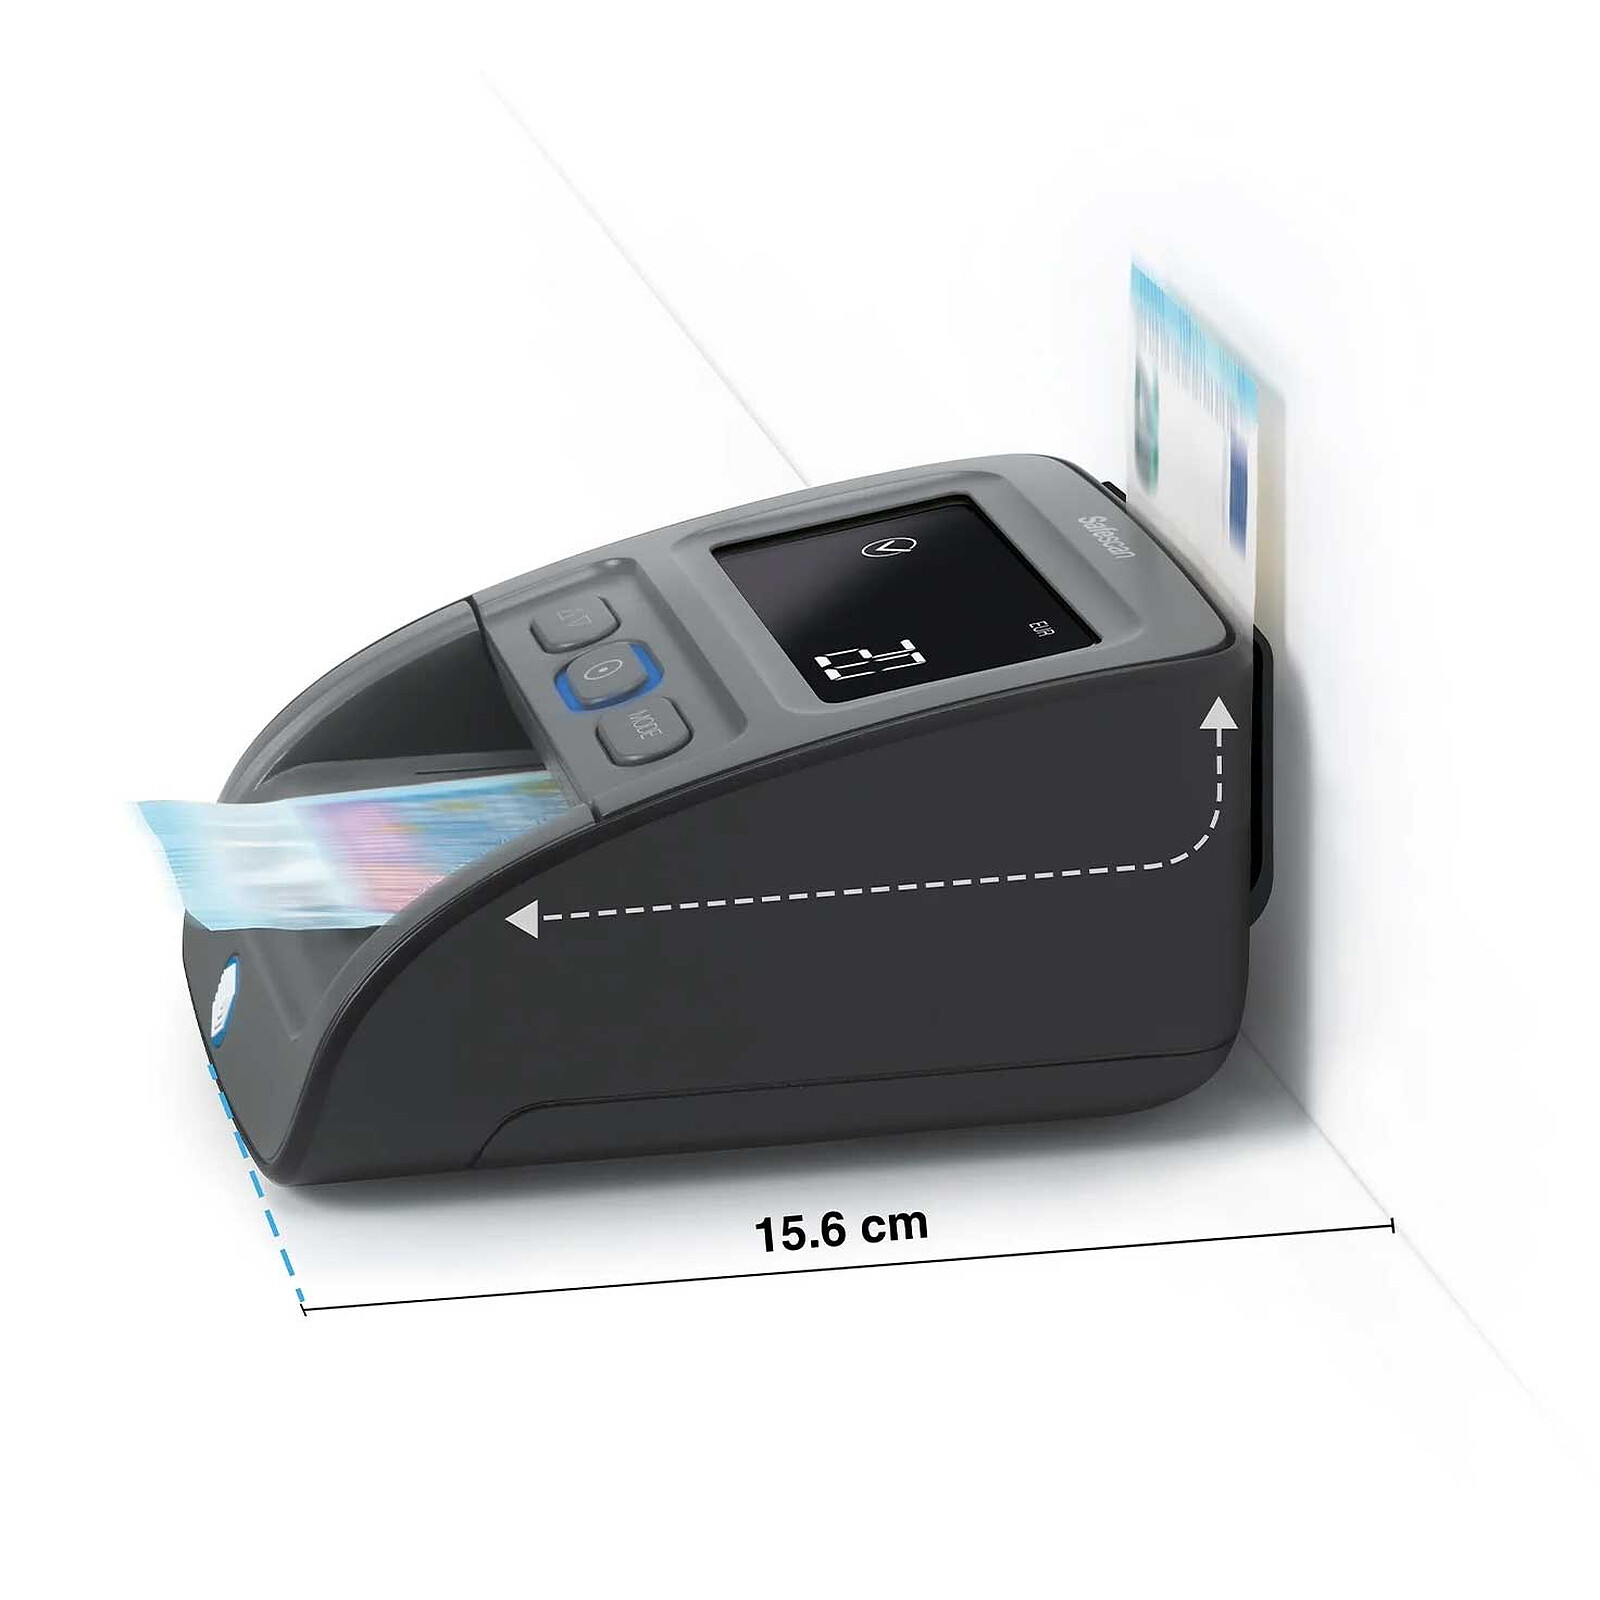 Safescan 155-S Détecteur automatique de faux billets 7 modes de détection -  Coloris Noir - Détecteurs de Faux Billetsfavorable à acheter dans notre  magasin